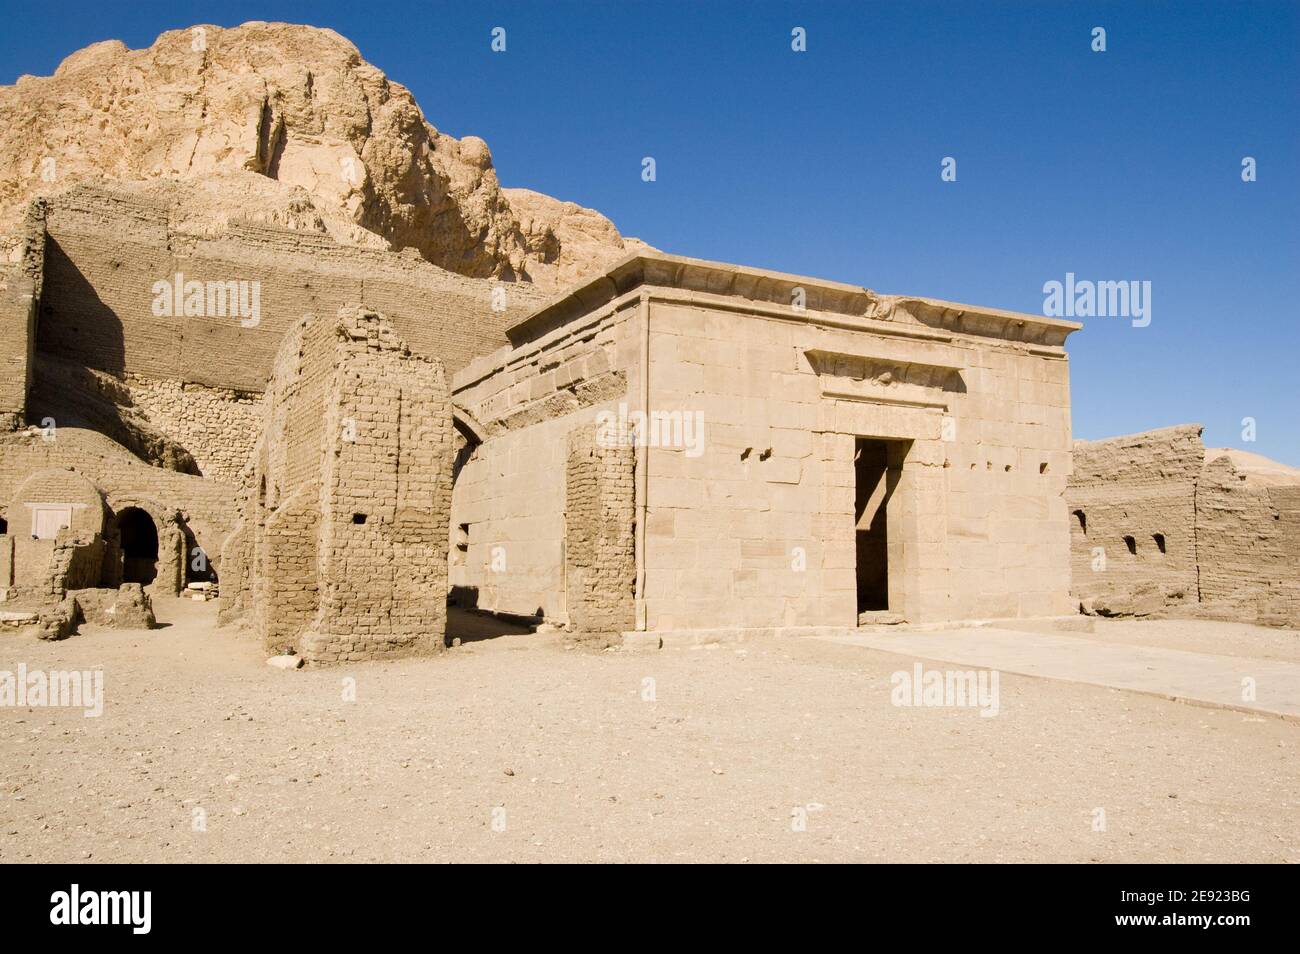 Der altägyptische Tempel, erbaut in der Zeit von Ptolemäus IV. Im 3rd. Jahrhundert v. Chr. in Deir el Medina, Luxor. Alte Ruine, über 1000 Jahre alt. Stockfoto